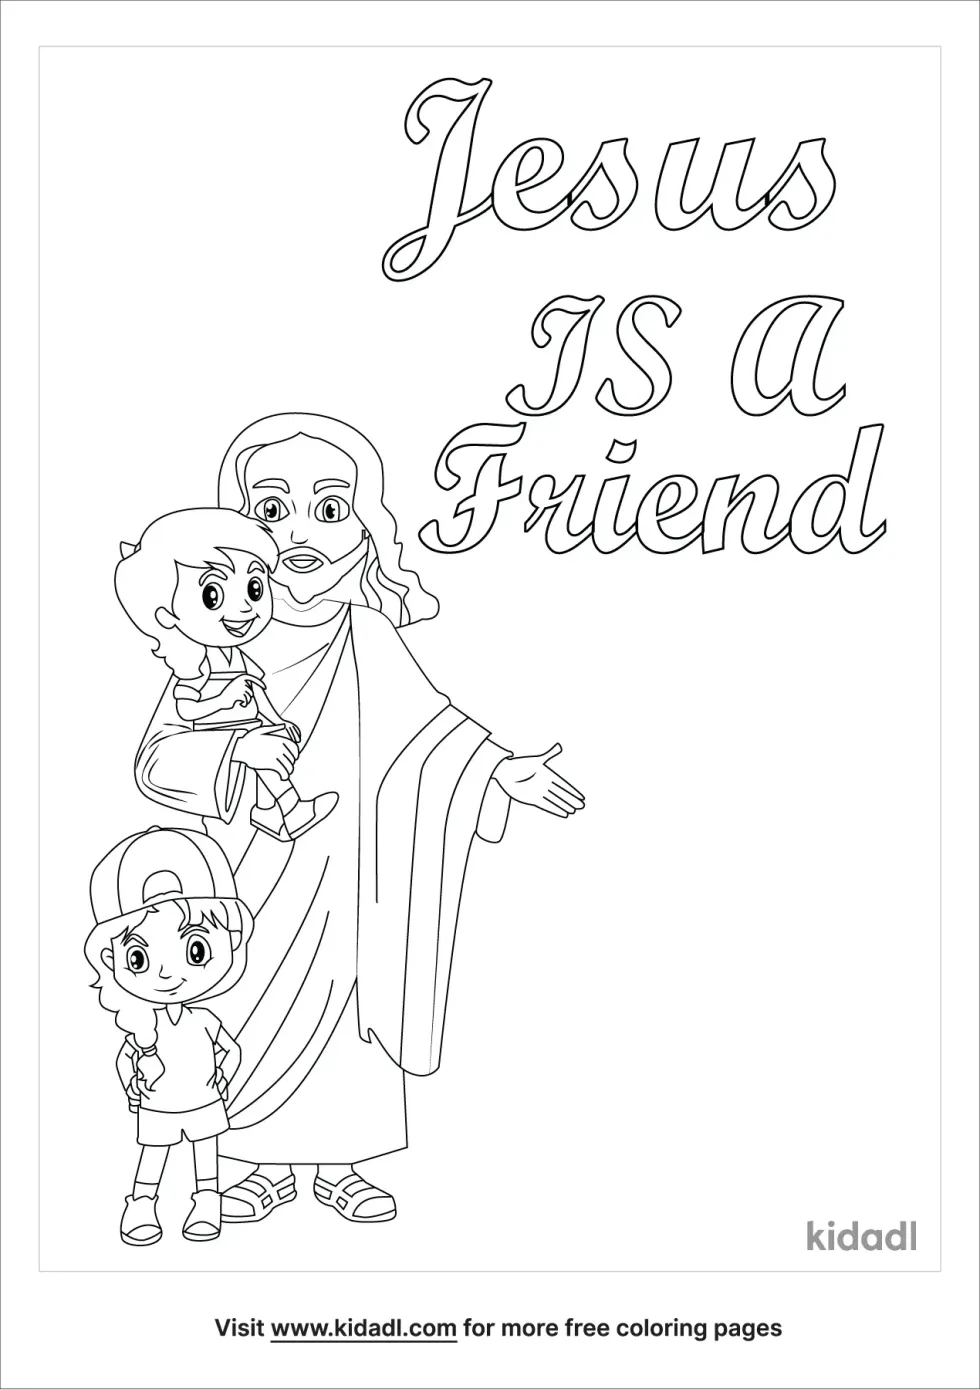 Jesus Is A Friend